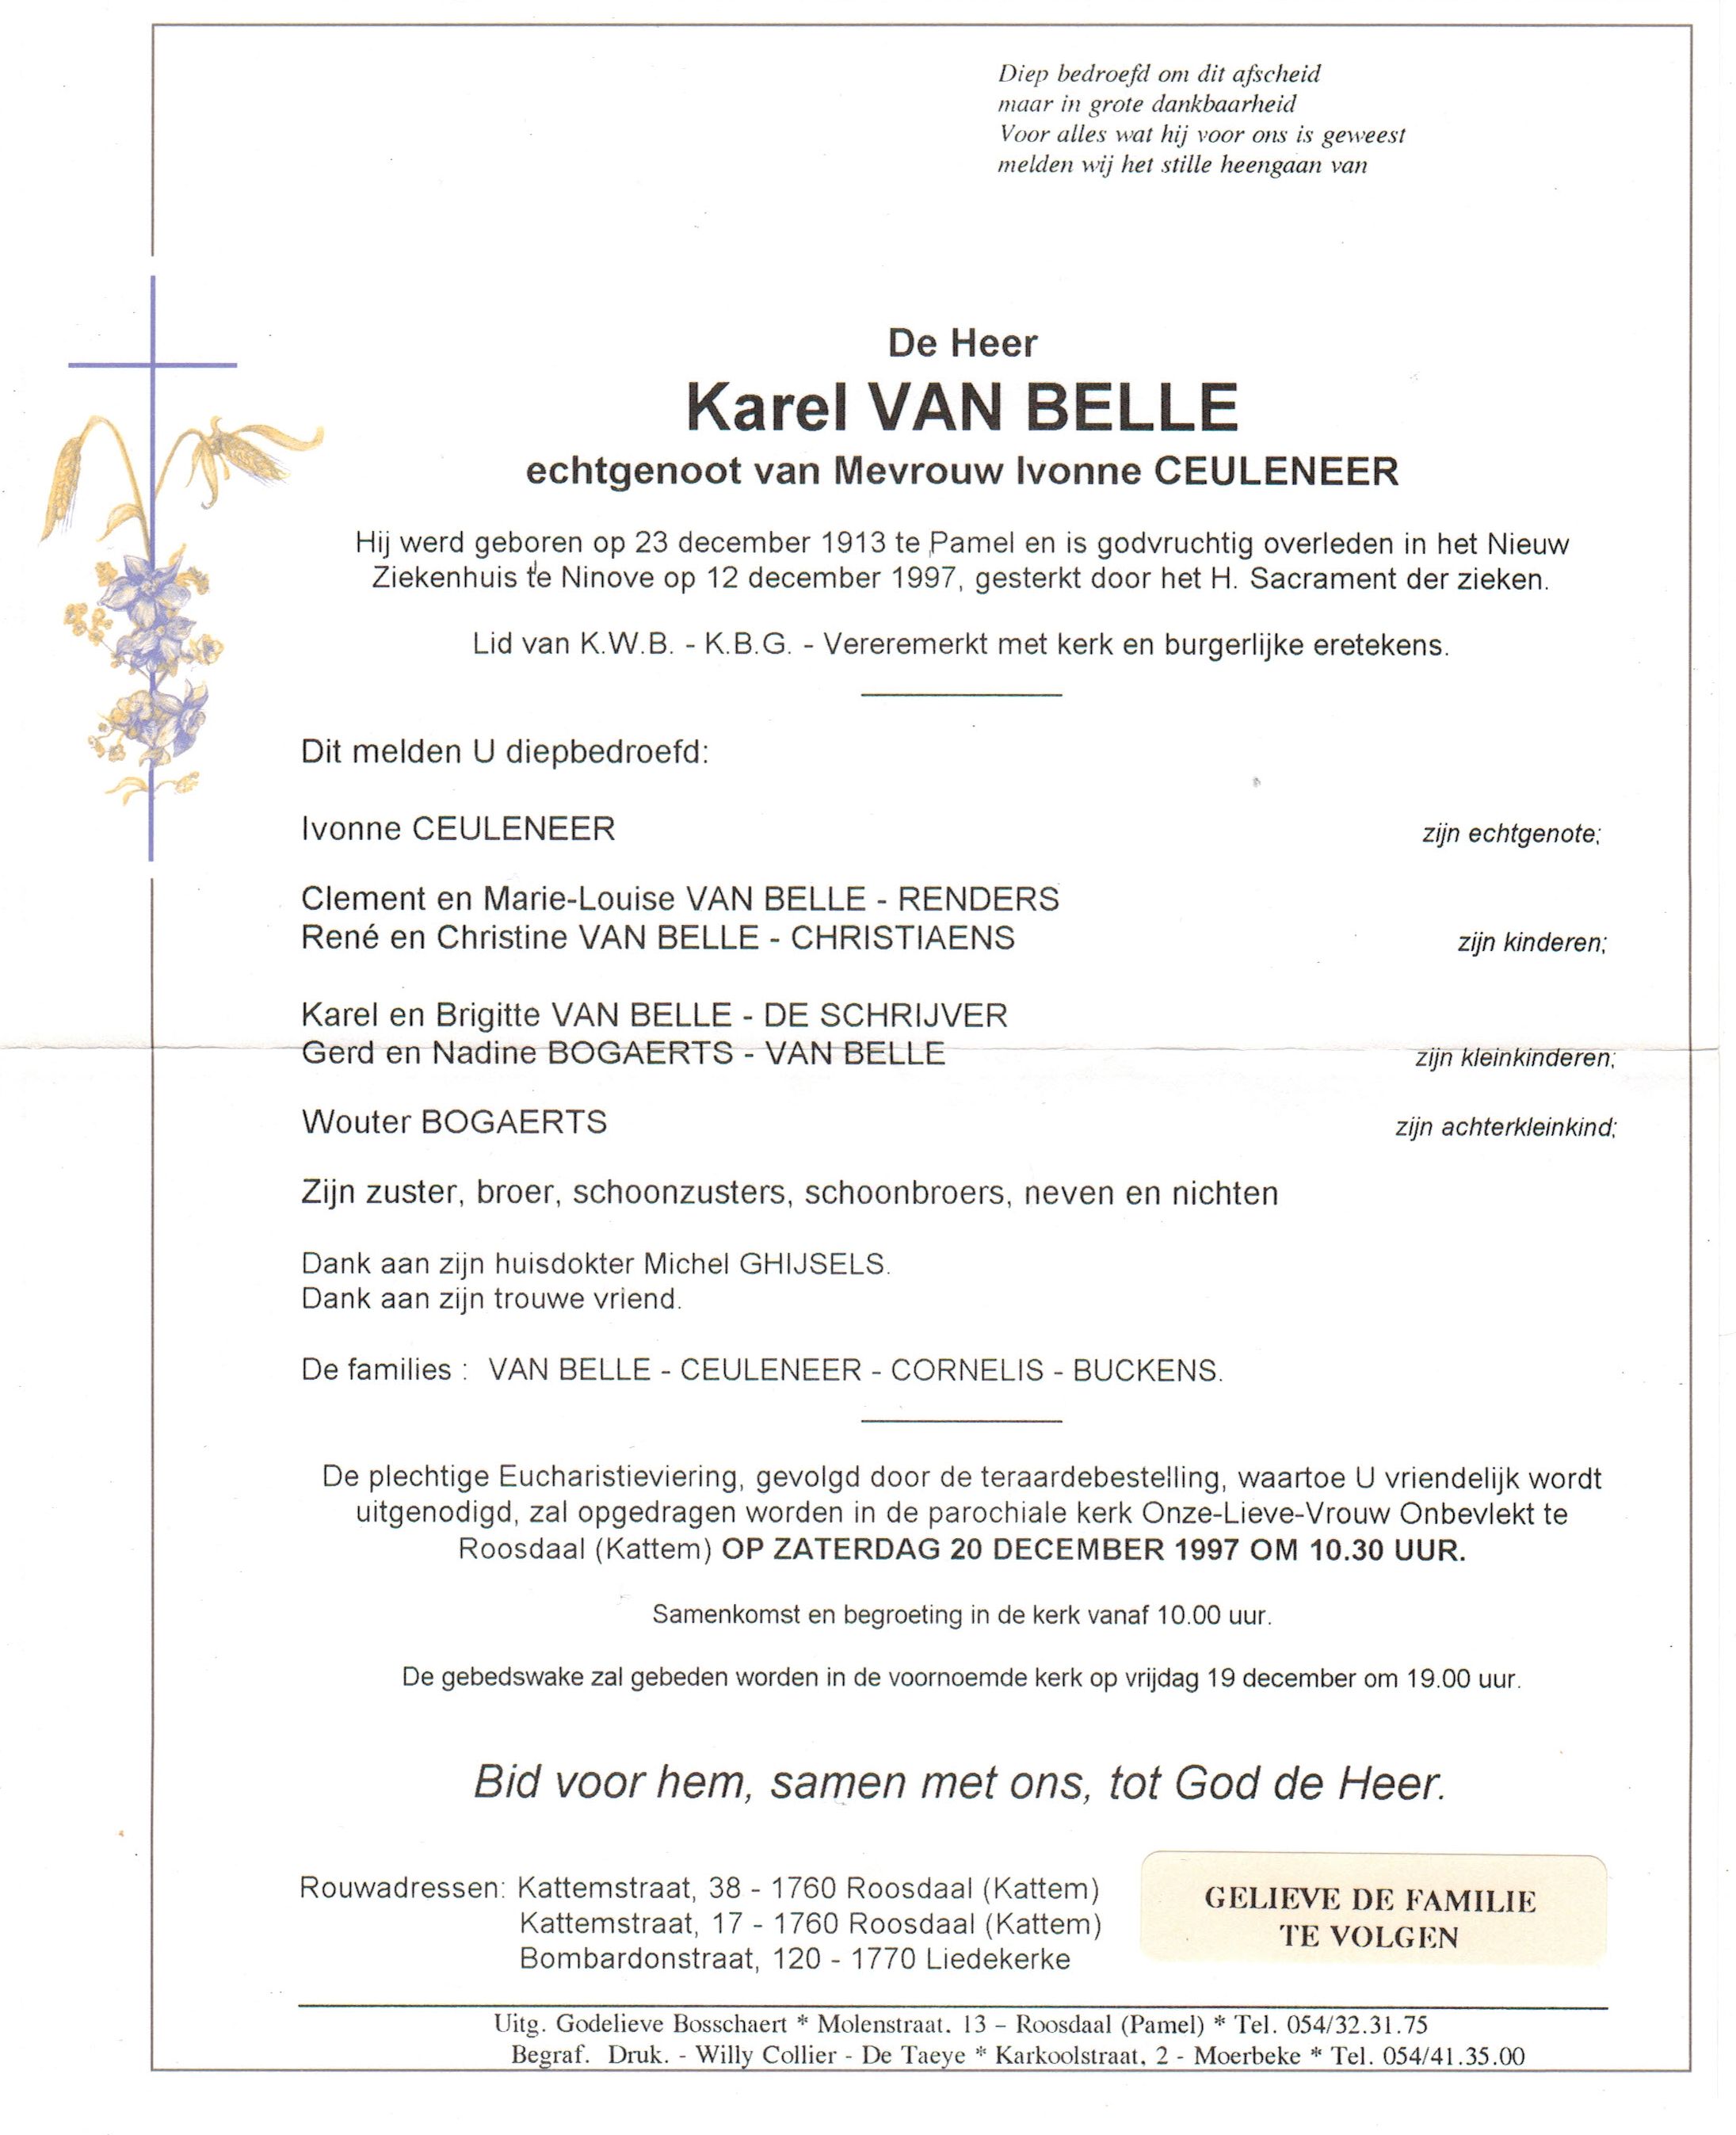 Van Belle Karel 